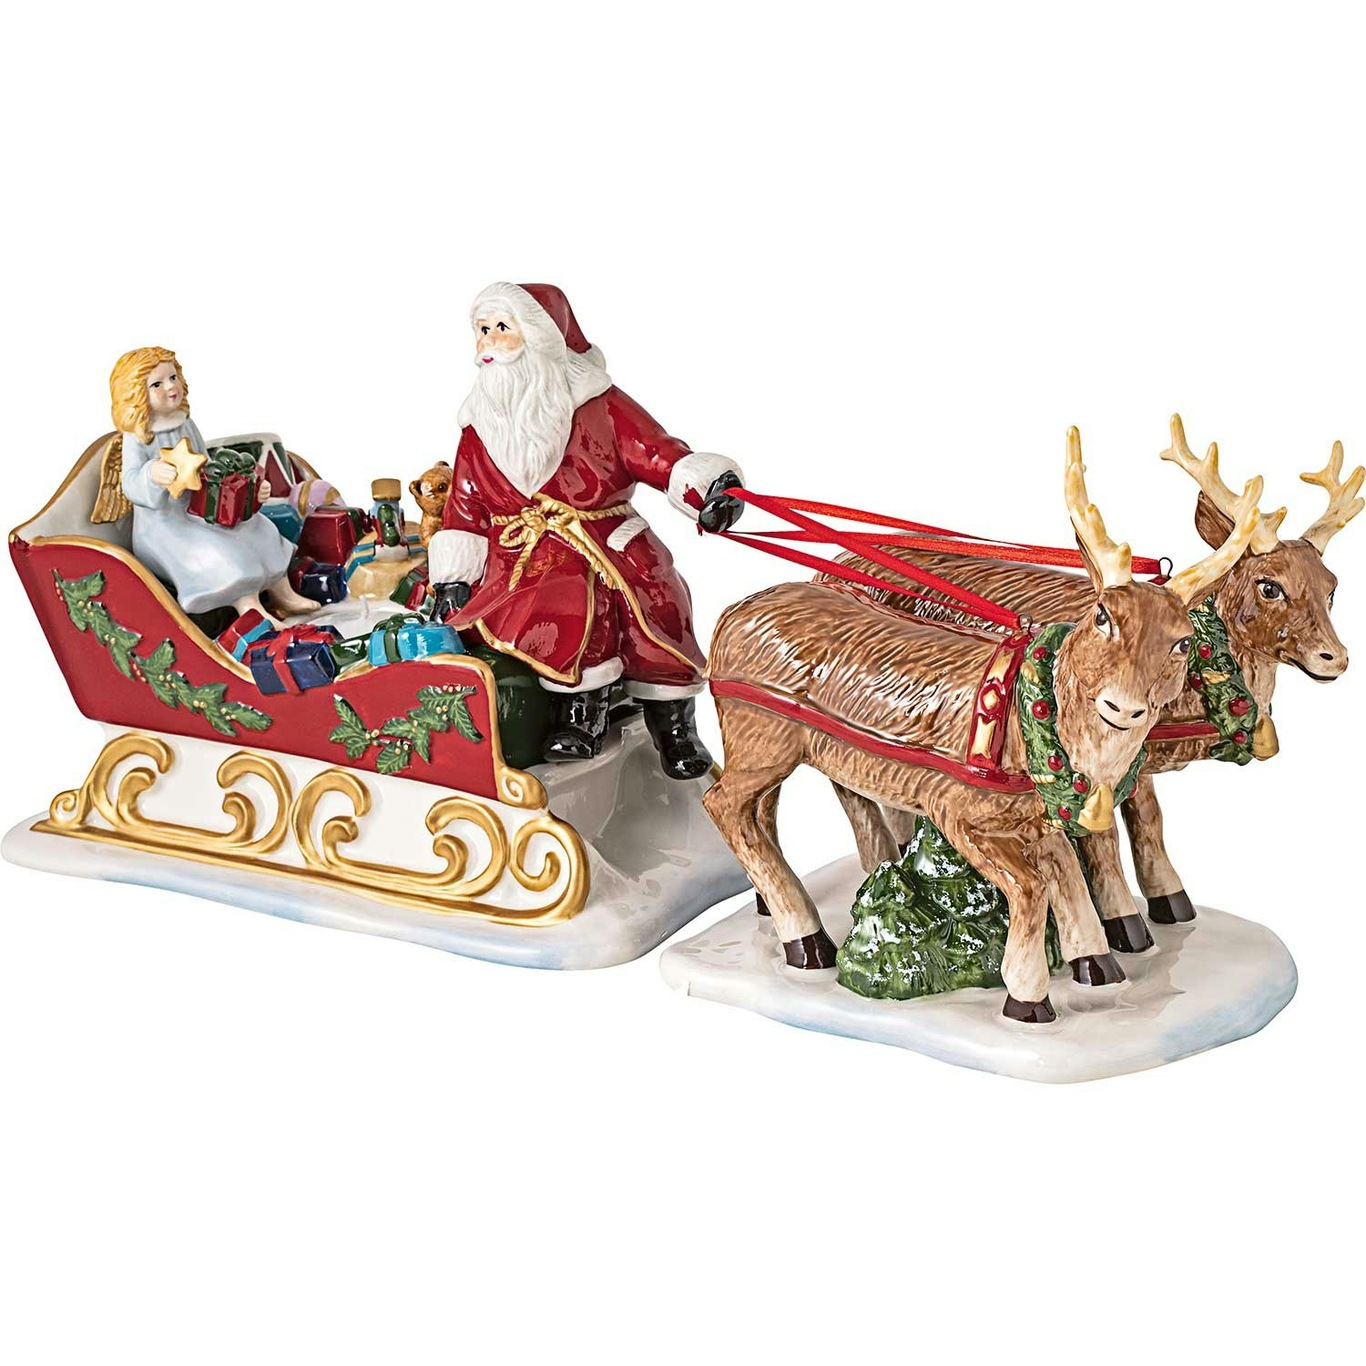 Villeroy & Boch Christmas Toys memory Paseo en trineo - cvillegas